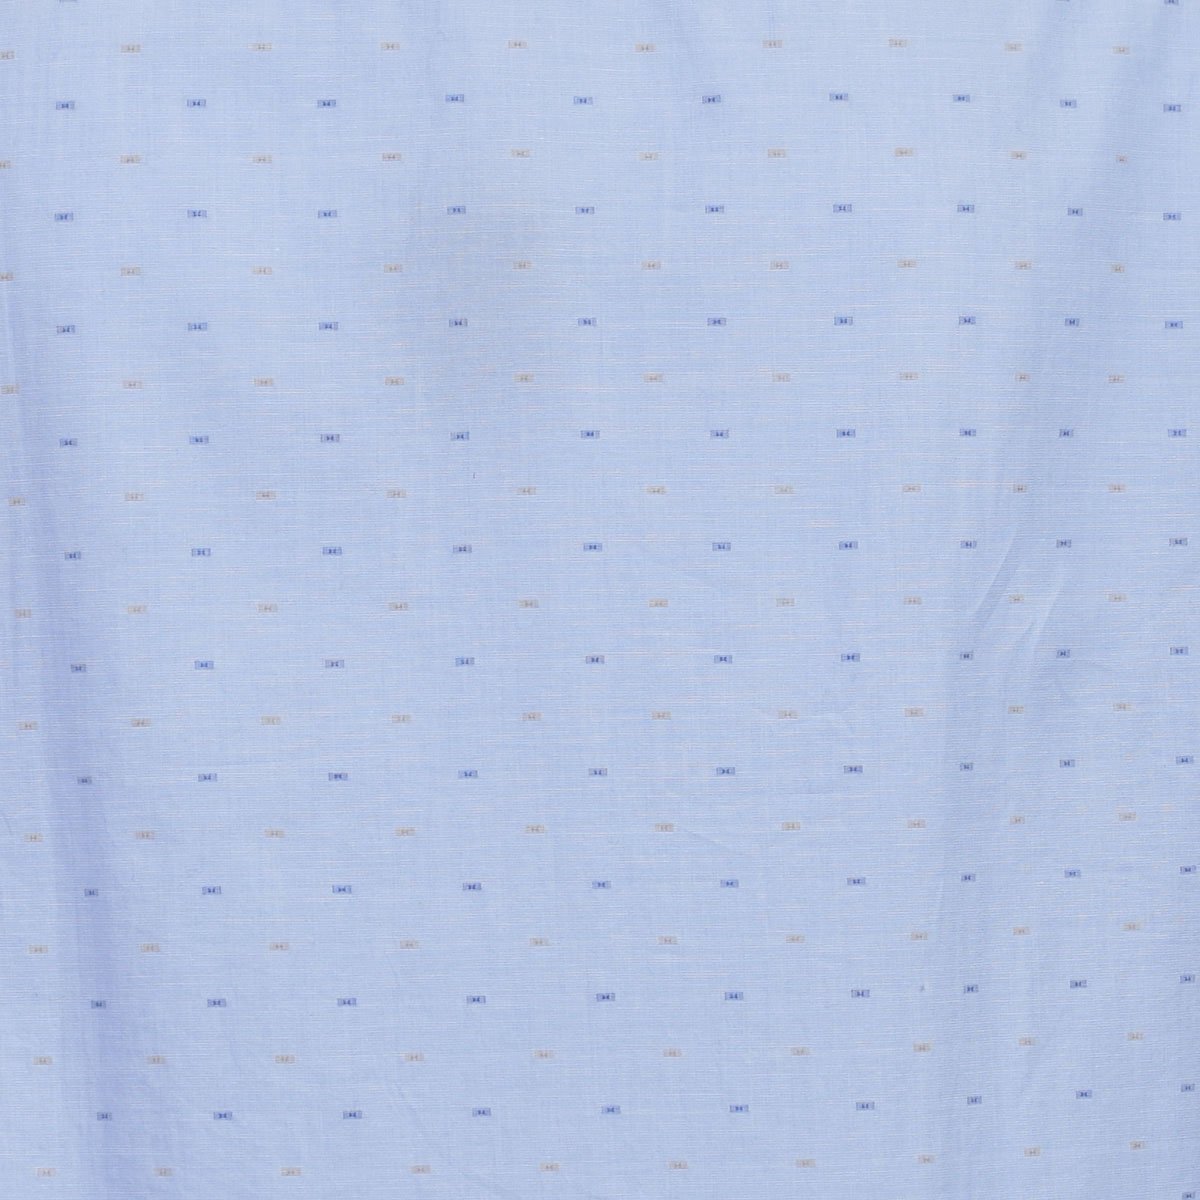 Camisa Azul Combinado Manga Larga con Elevadores J. Opus para Caballero